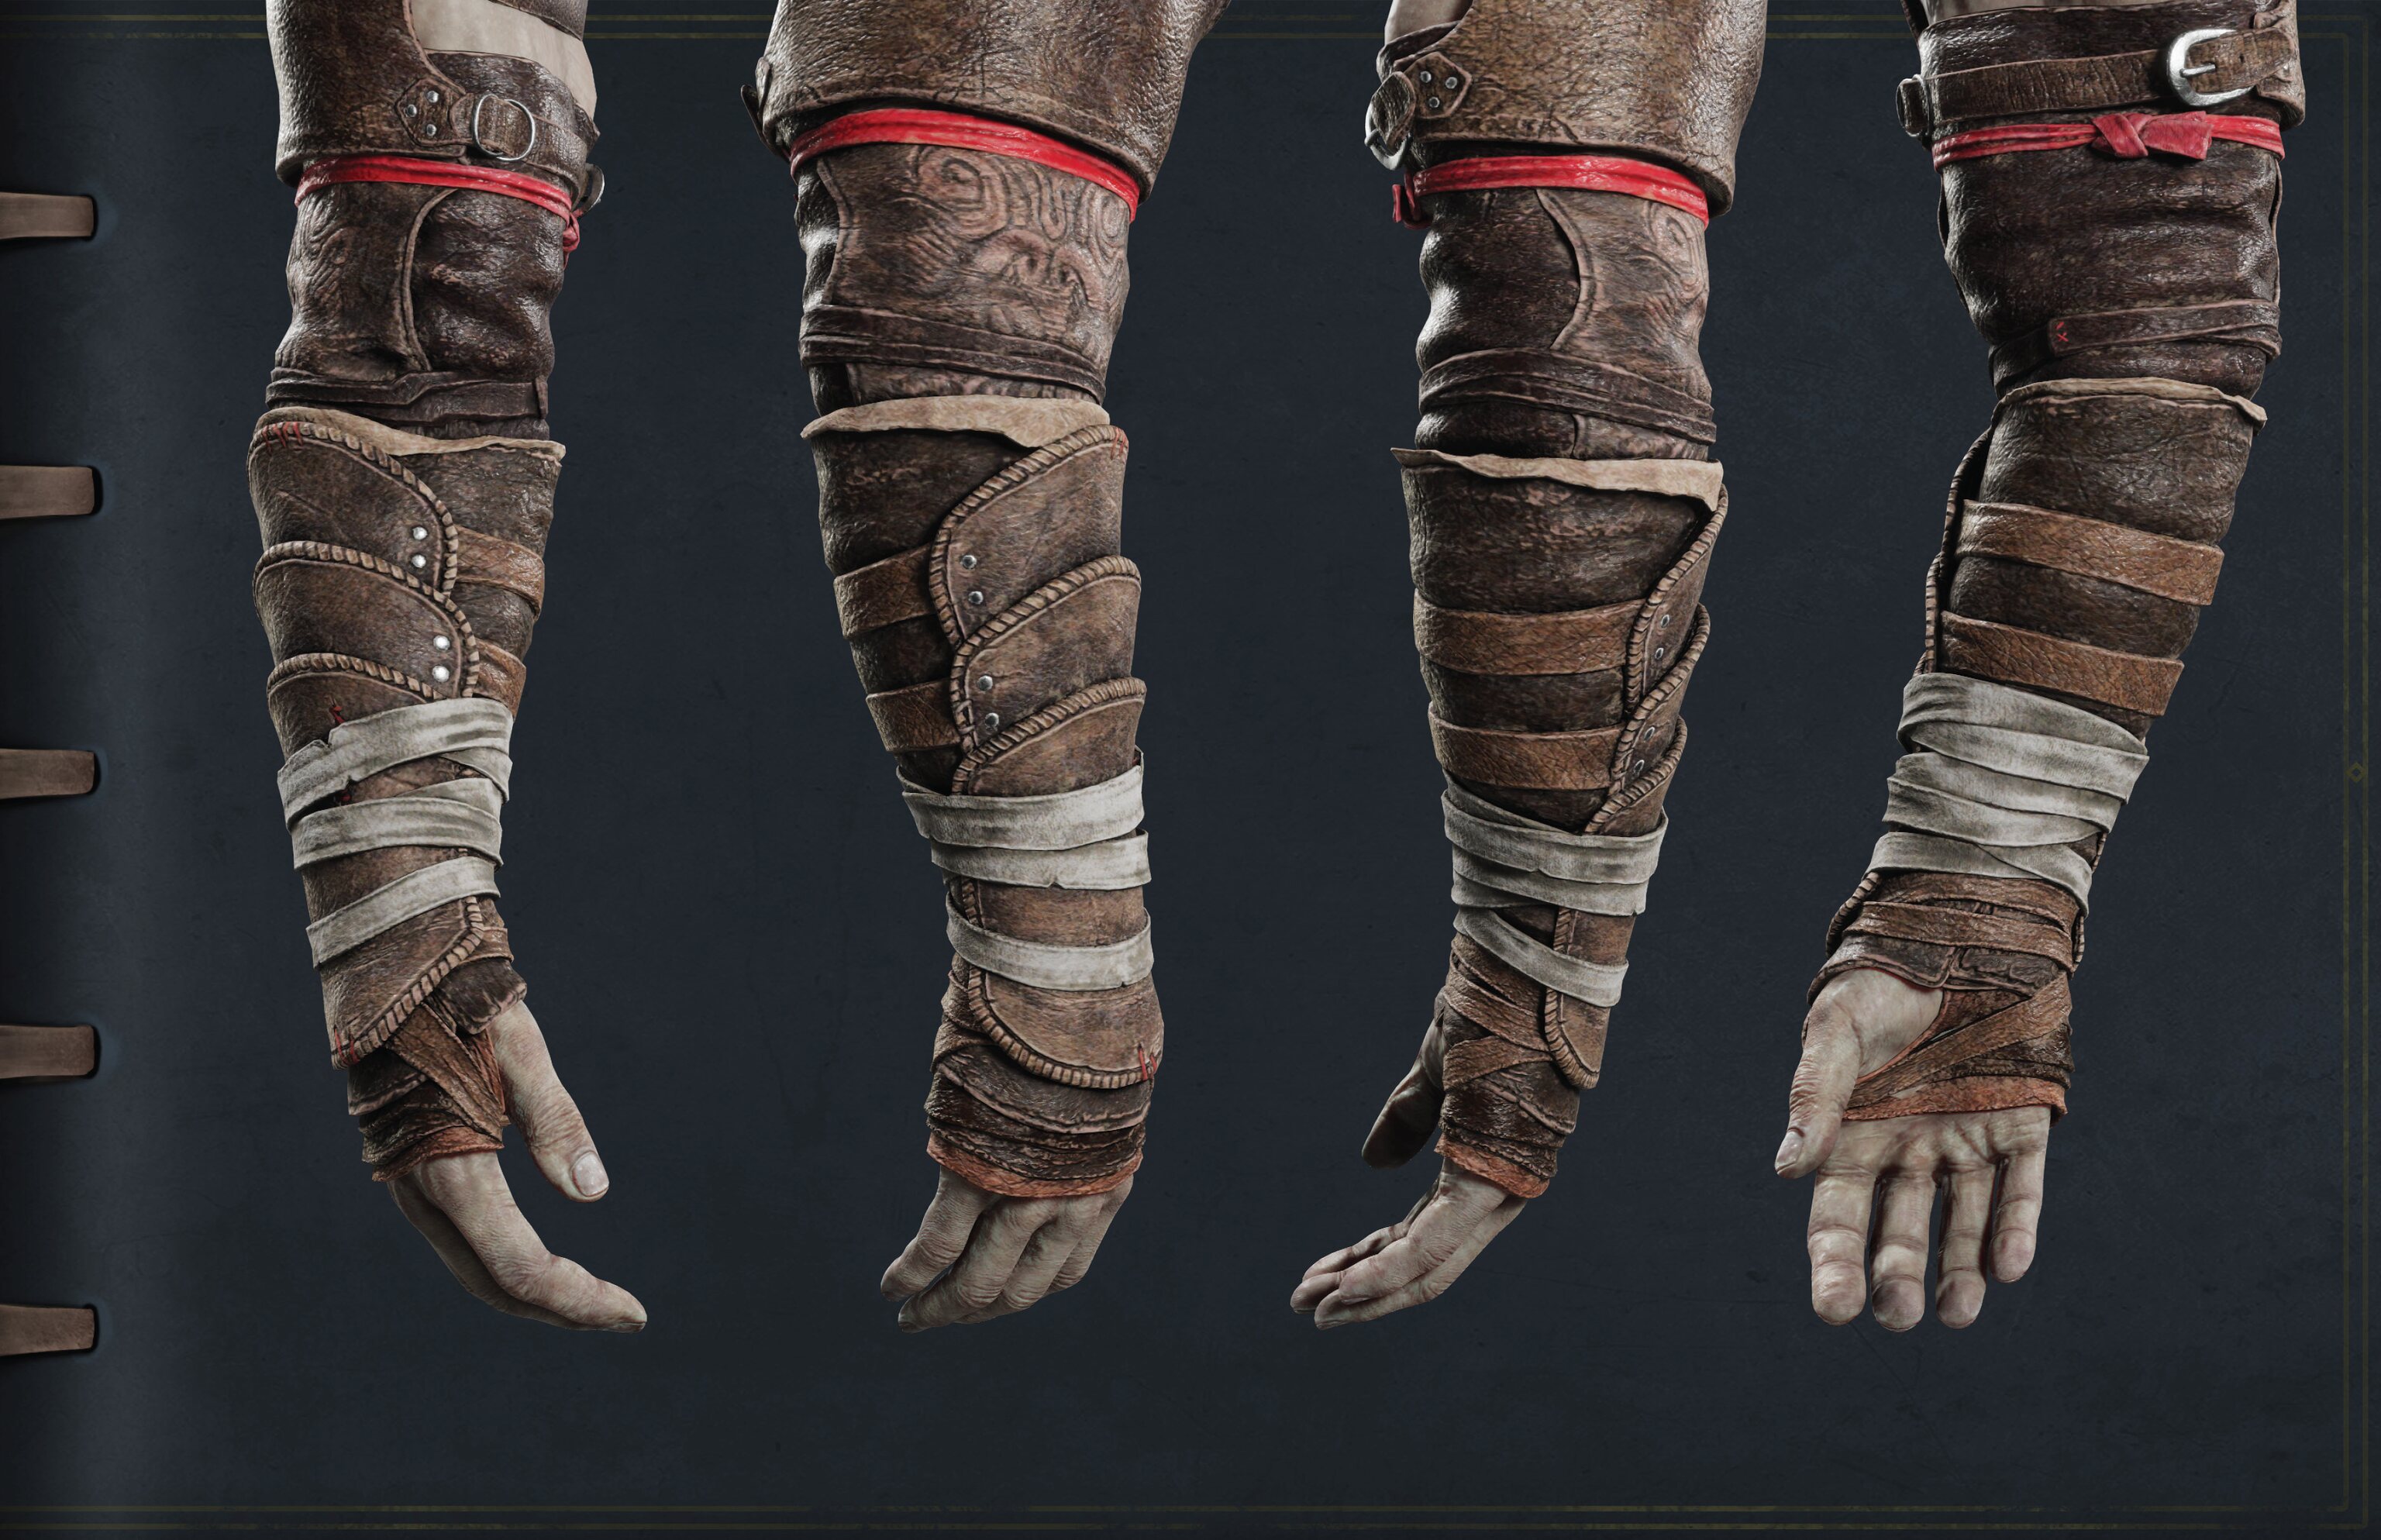 Cette image est tirée du Guide de Cosplay et montre différents angles du bras droit de Kratos.